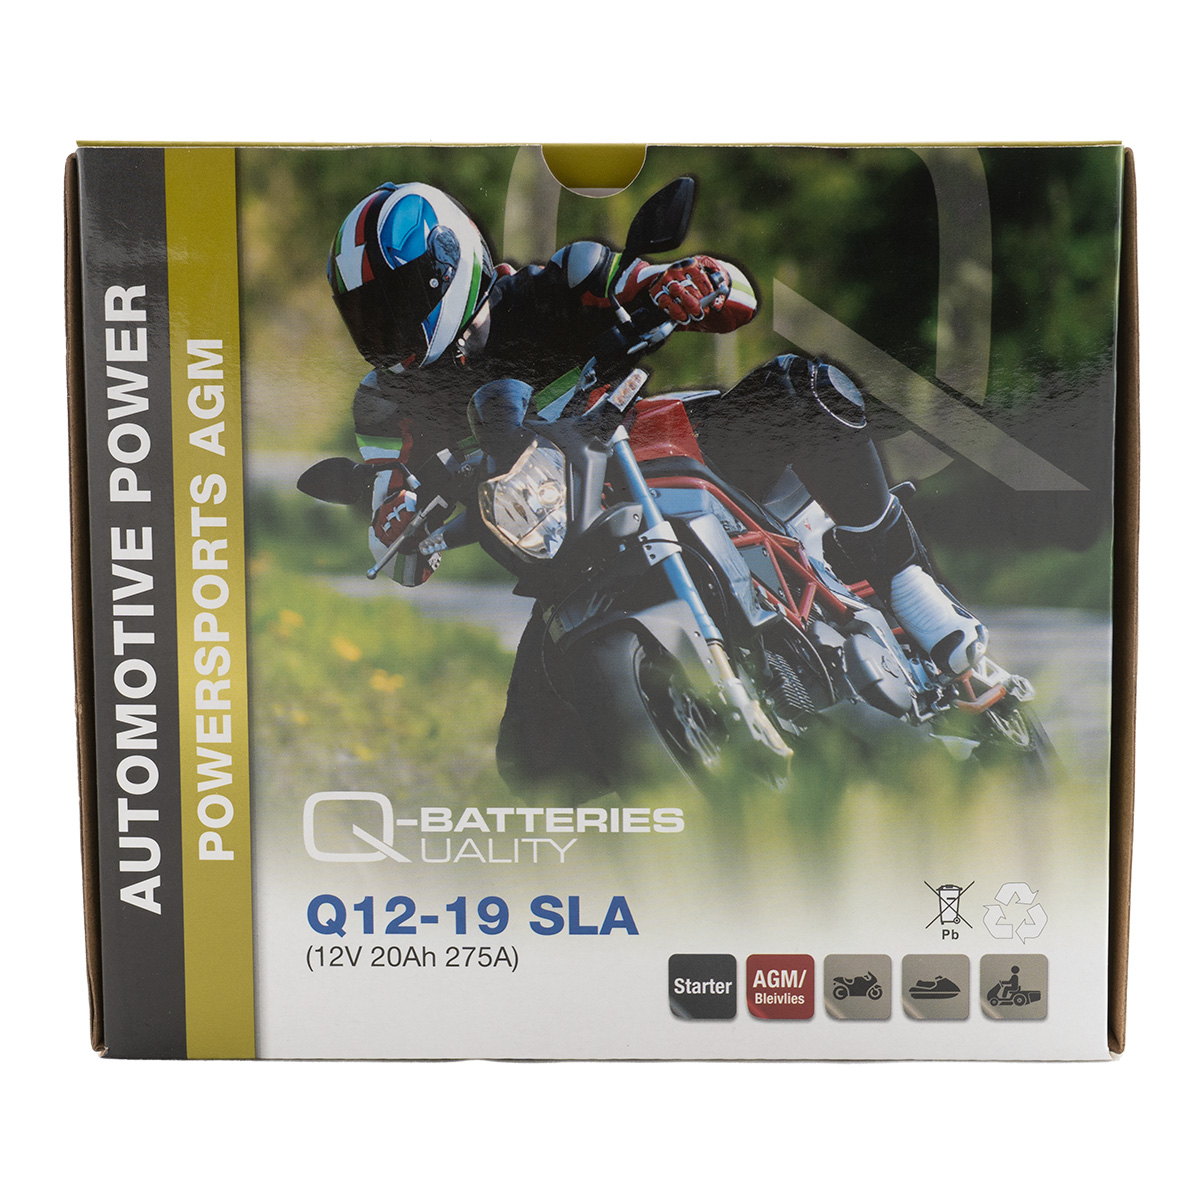 Q-Batteries Q12-19 AGM Motorradbatterie 12V 20Ah 275A 51913 SLA